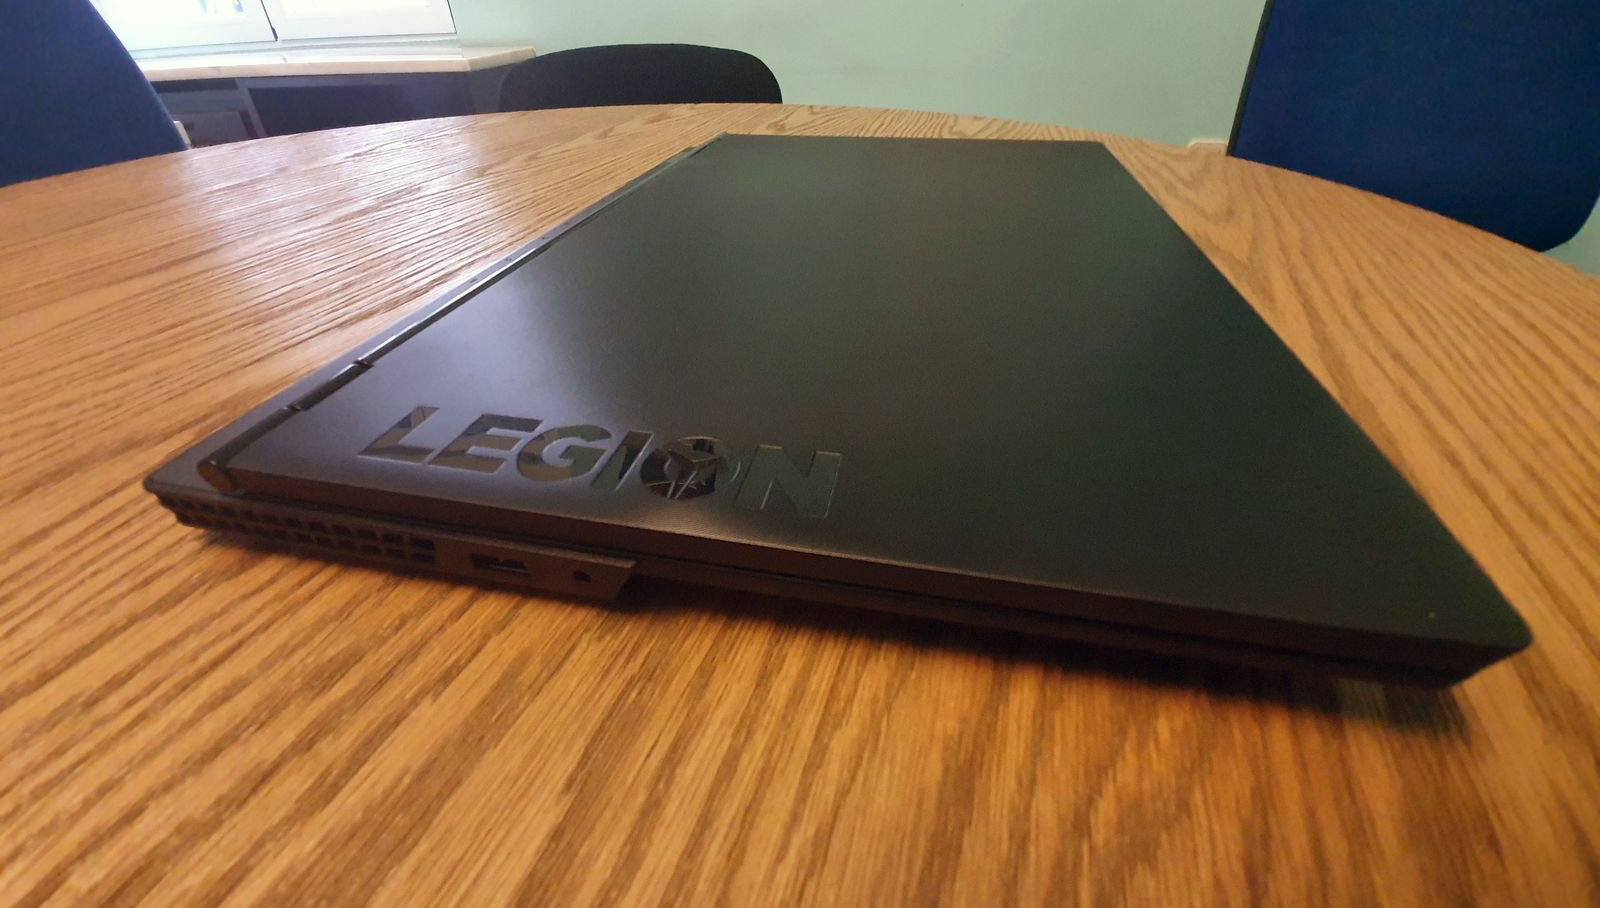 Lenovo-Legion-Y530 vista desde el perfil